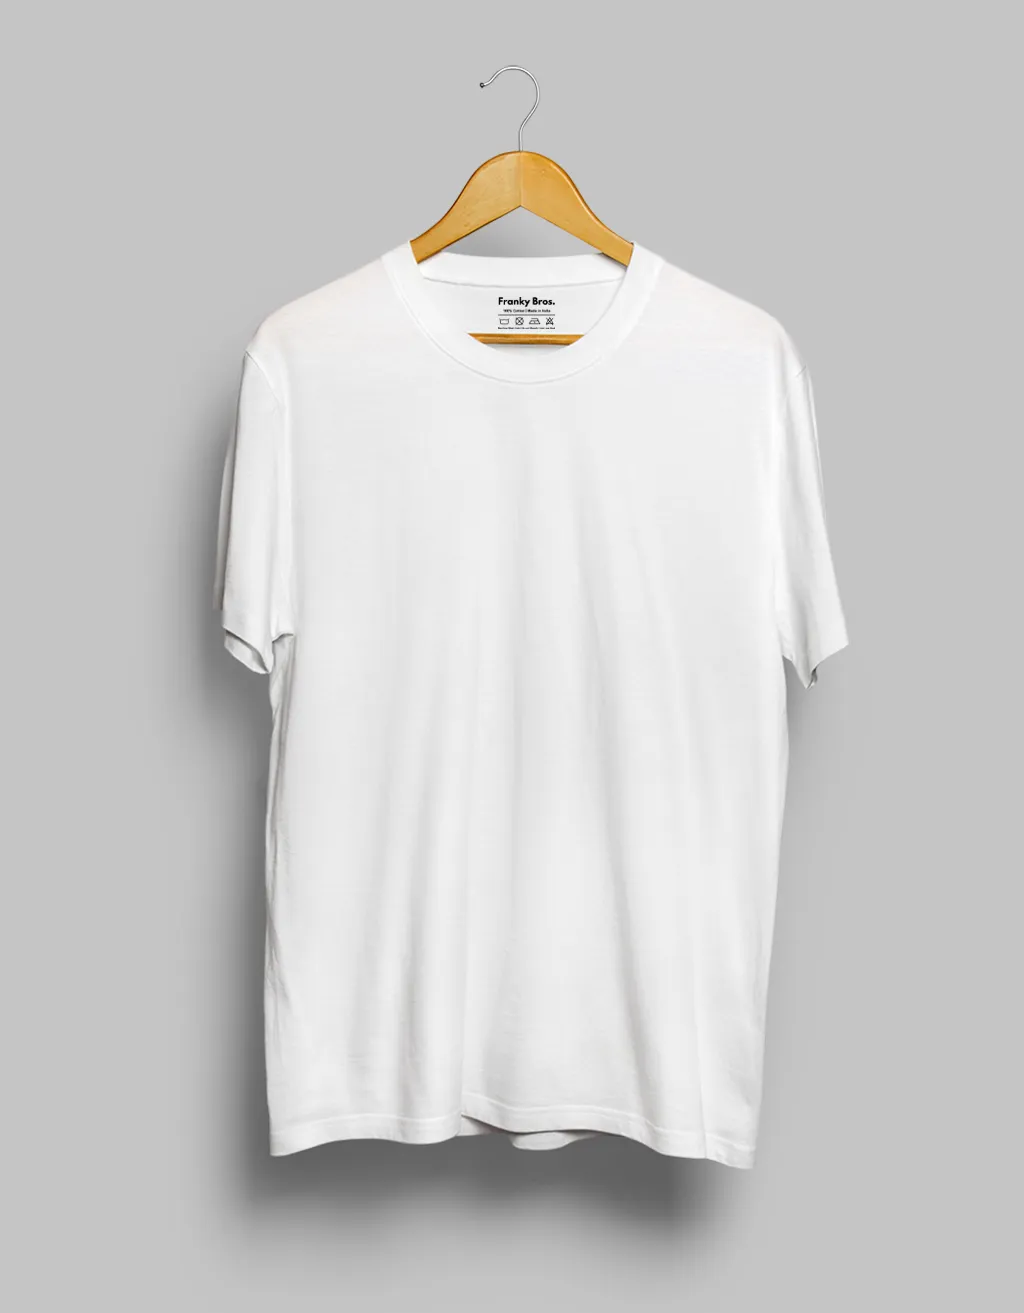 Buy Plain White shirt for Men and Online in